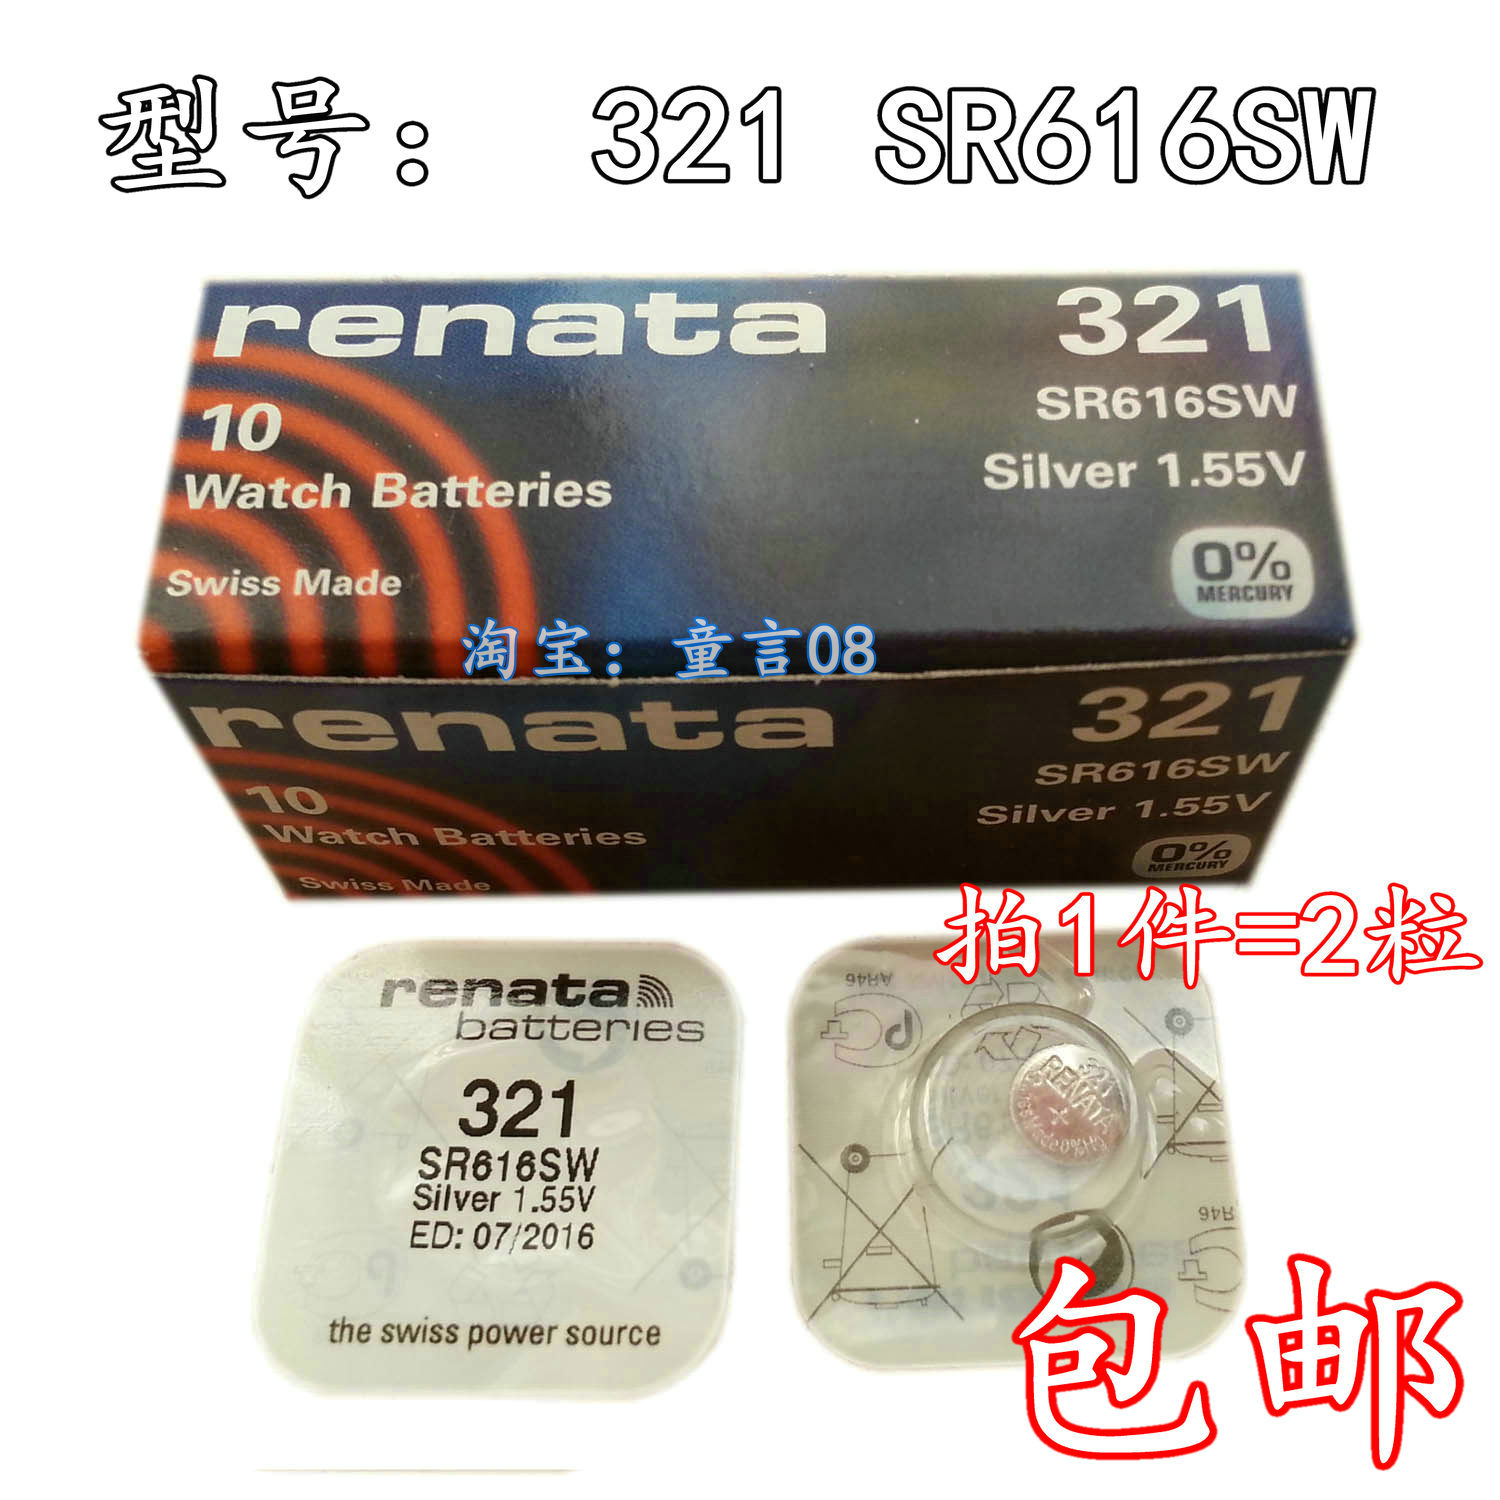 包邮 2粒RENATA瑞士321/SR616SW高端手表1.55V正品氧化银纽扣电池